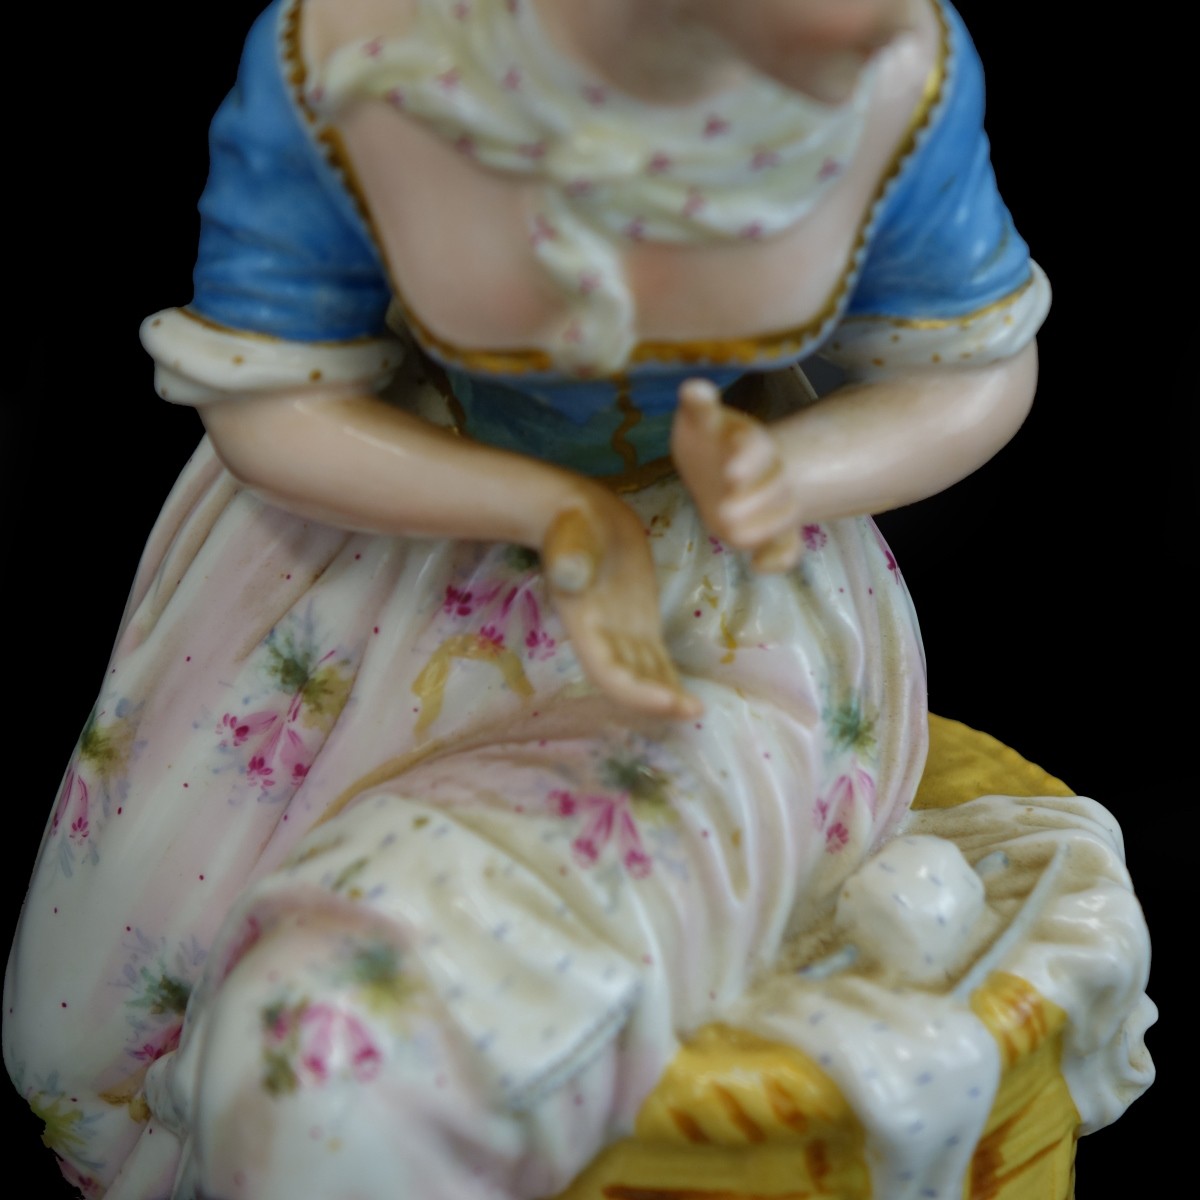 Pair of German Porcelain Figurines